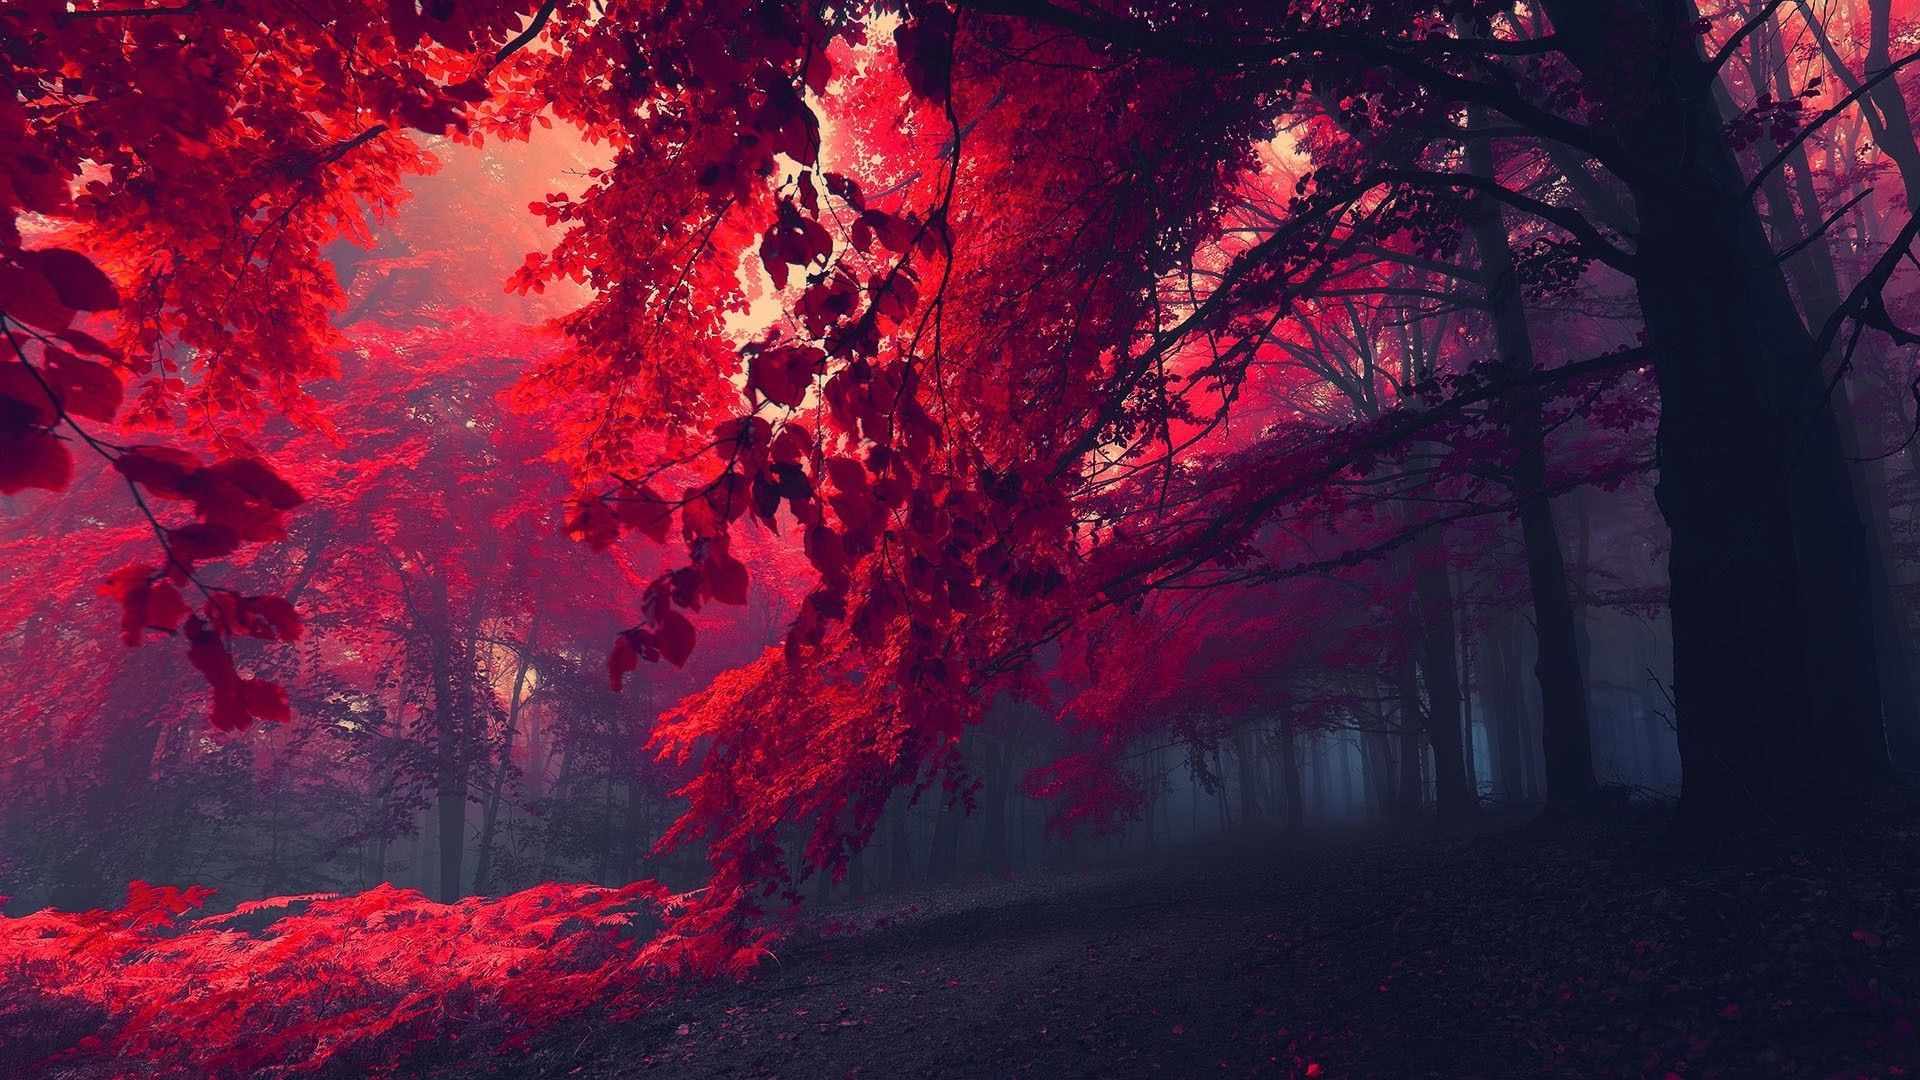 Hình nền mùa thu đỏ: Tận hưởng mùa thu ấm áp và ngọt ngào hơn bao giờ hết với hình nền mùa thu đỏ! Sắc đỏ đậm nổi bật giữa bầu không khí se lạnh của mùa thu, tạo nên một không gian ấm cúng và đầy cảm xúc. Hãy để những chiếc lá đỏ rực này đưa bạn đến những khoảnh khắc đáng nhớ!